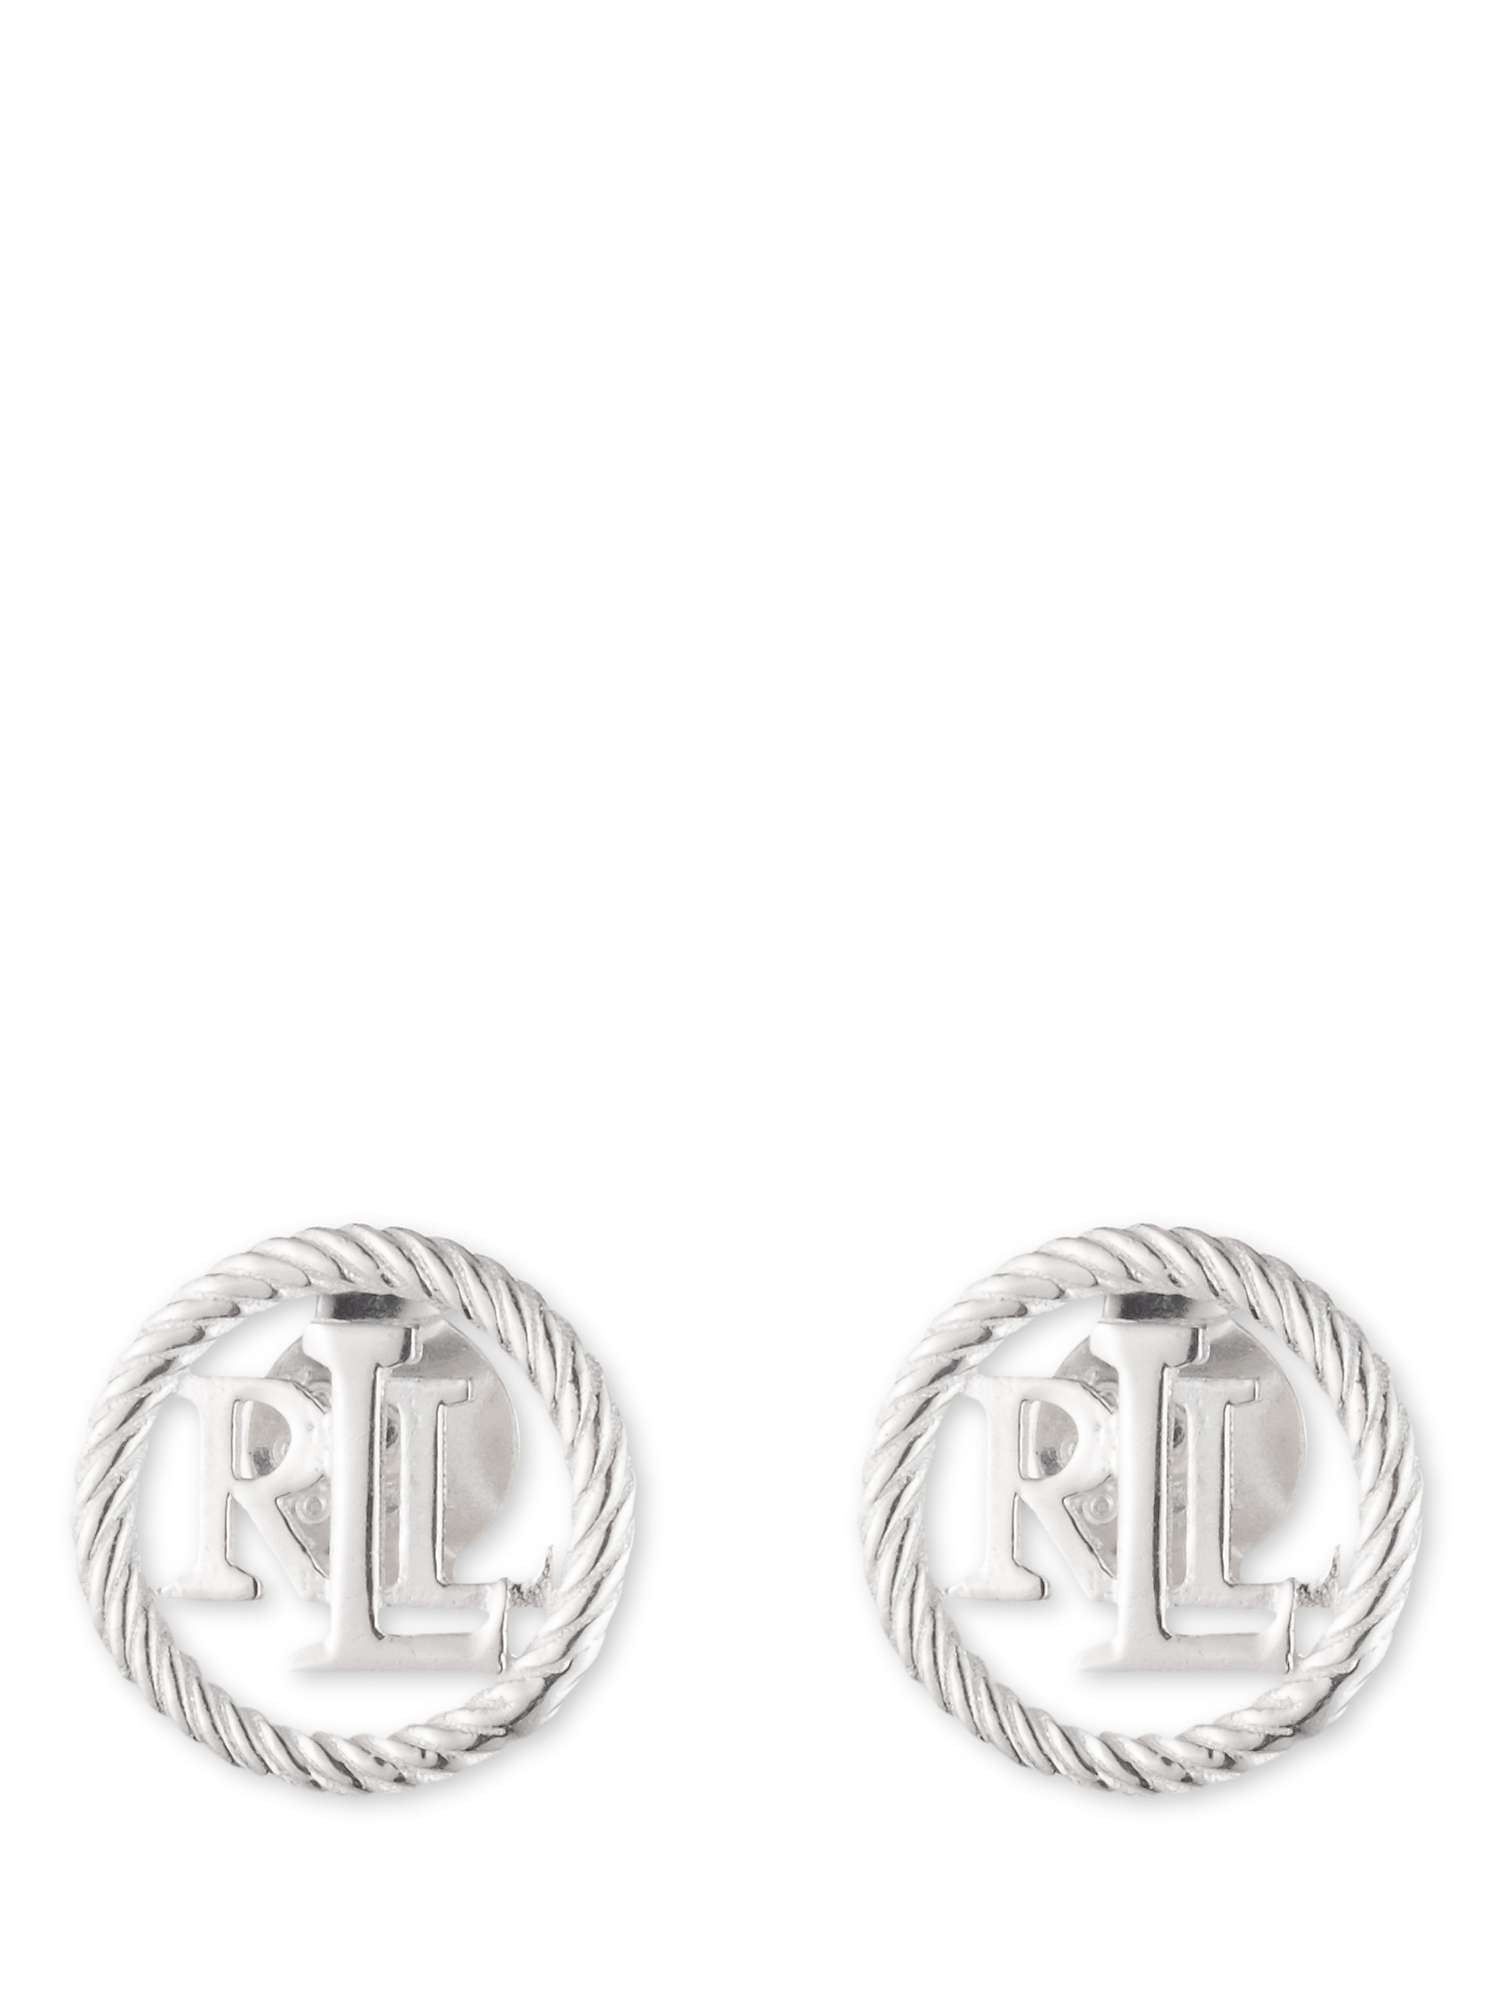 Buy Lauren Ralph Lauren Sterling Silver Monogram Stud Earrings, Silver Online at johnlewis.com